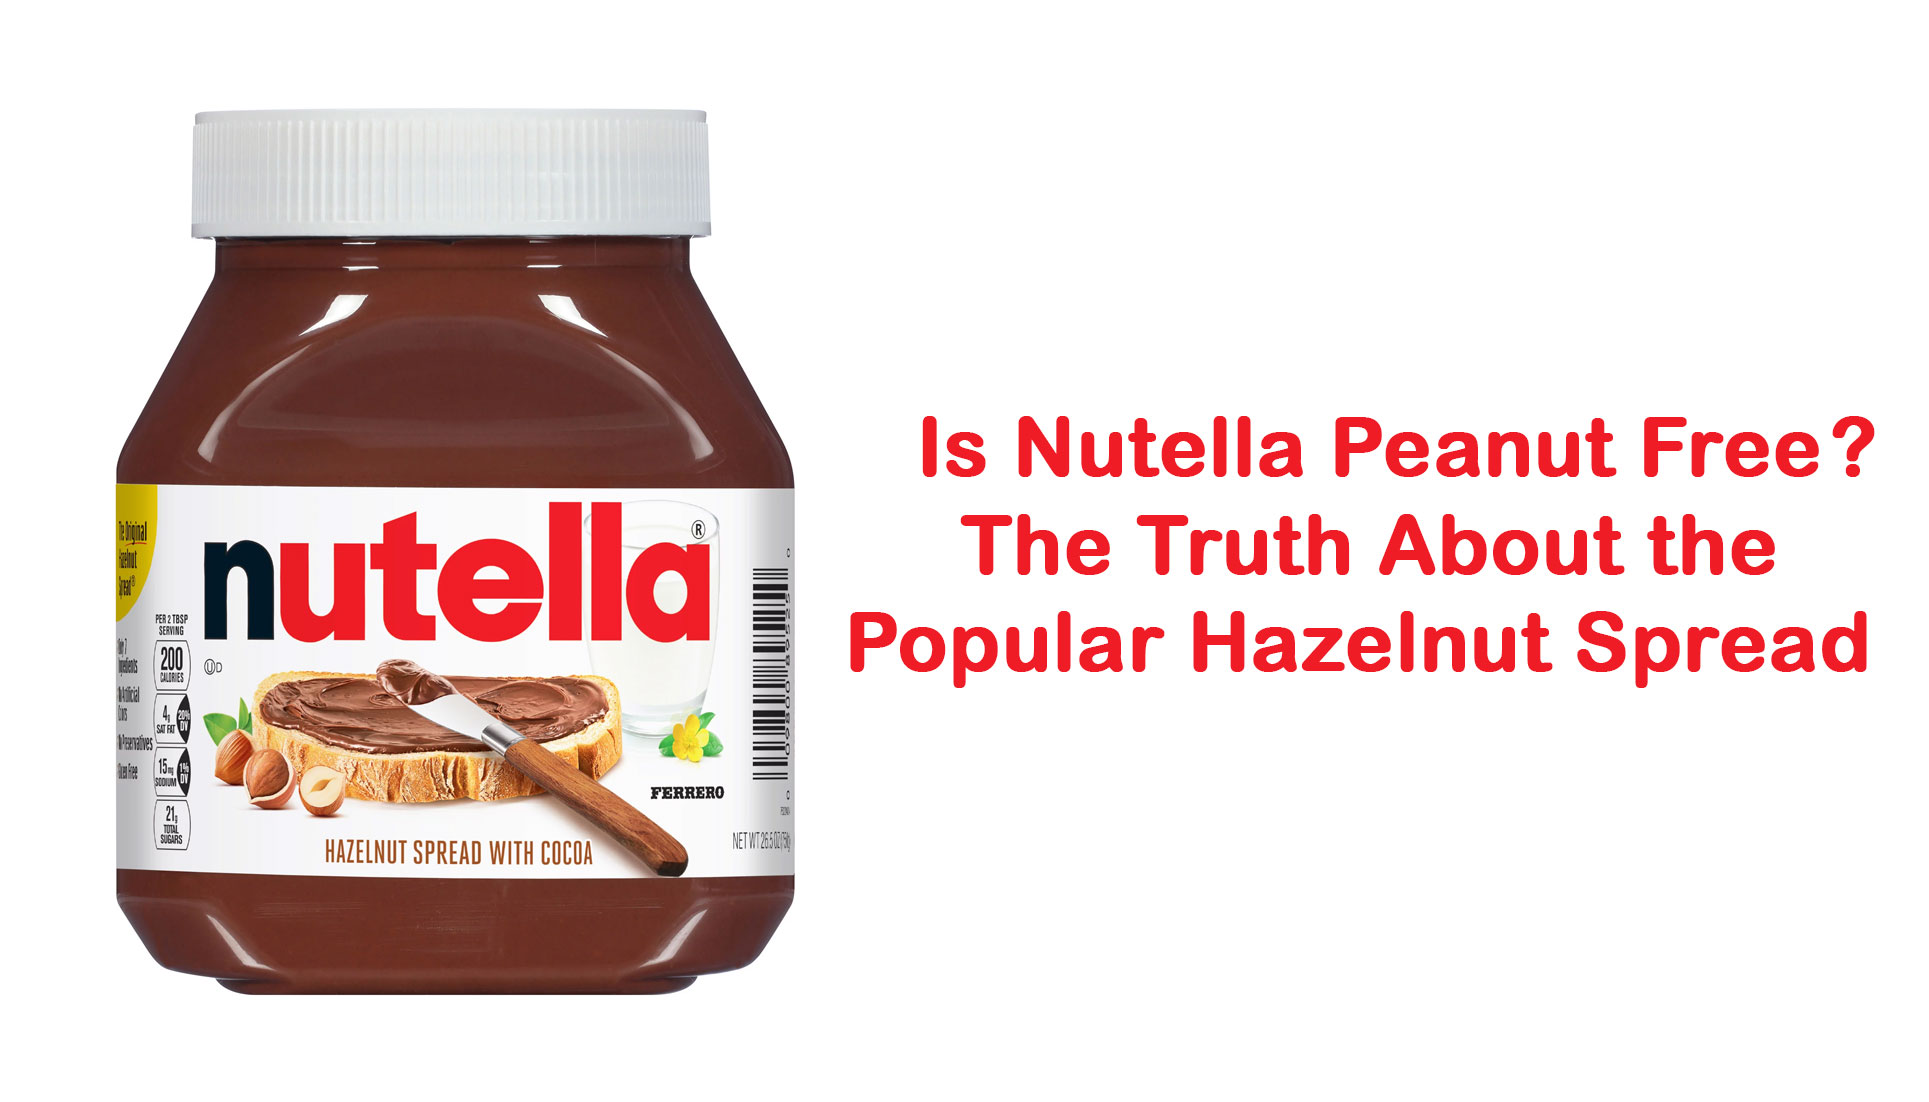 Is Nutella Peanut Free?